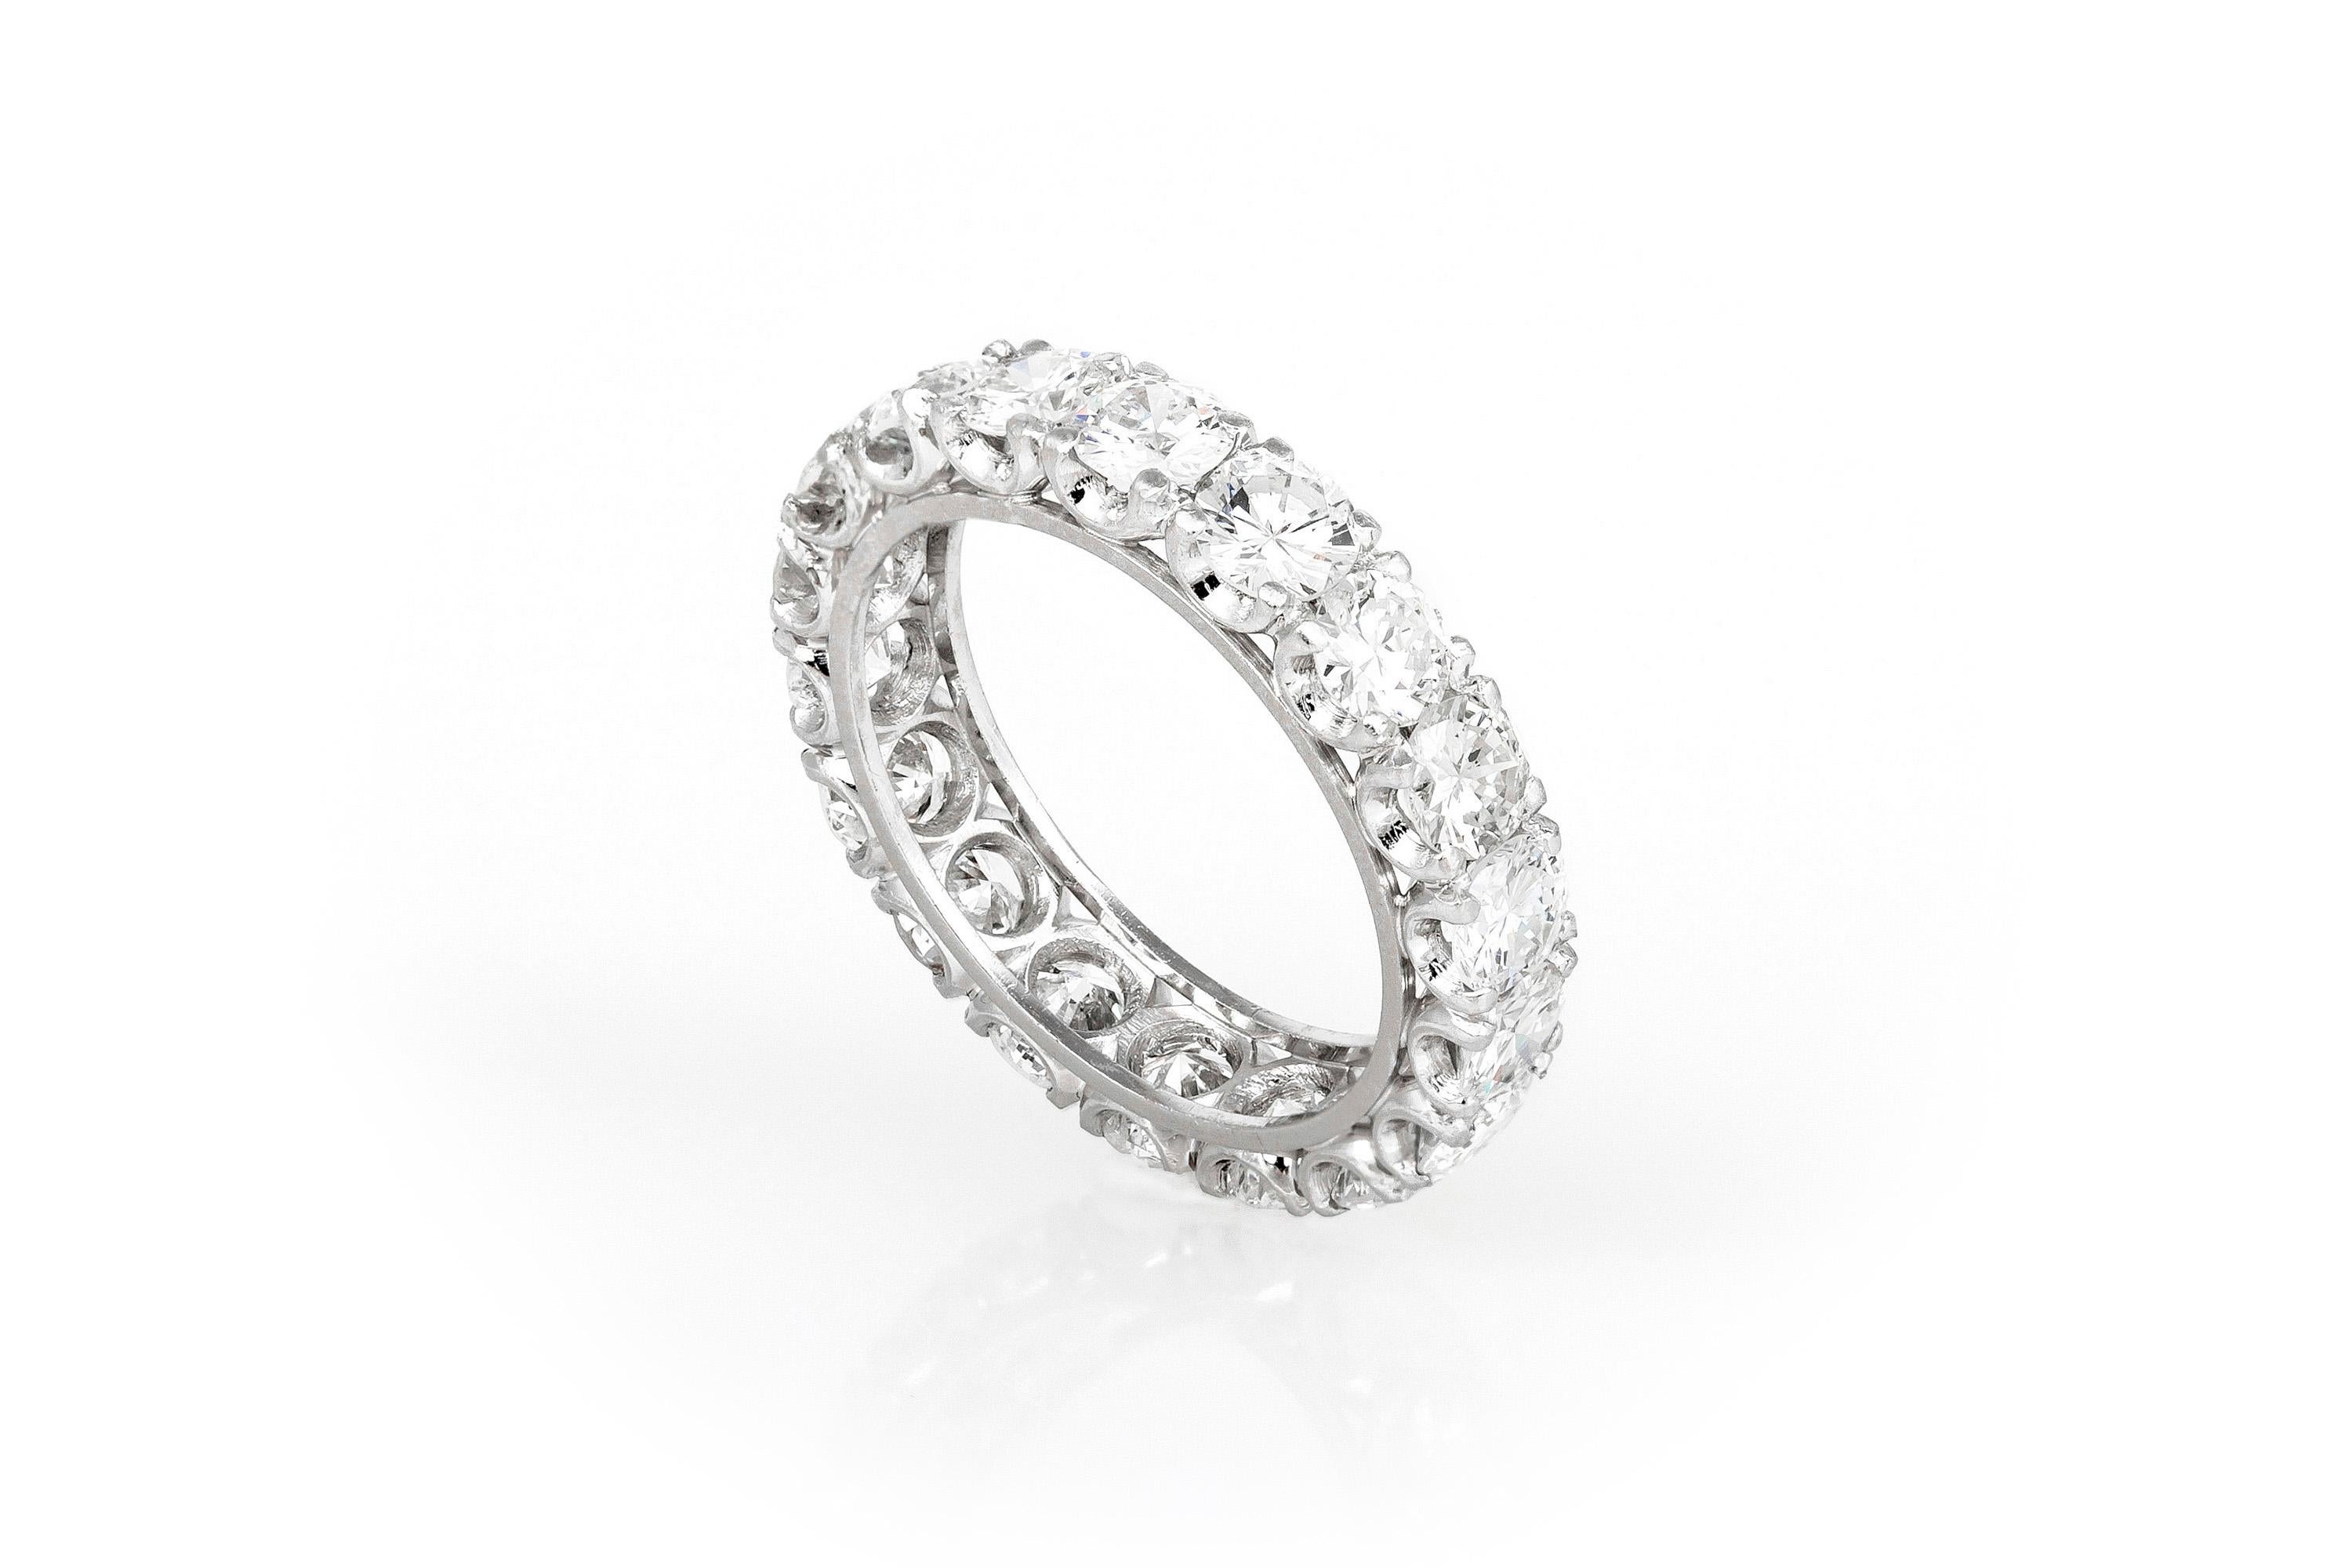 Der schöne Ring ist aus Platin gefertigt und mit 6,20 Karat Diamanten im Rundschliff besetzt.
irca 1940.